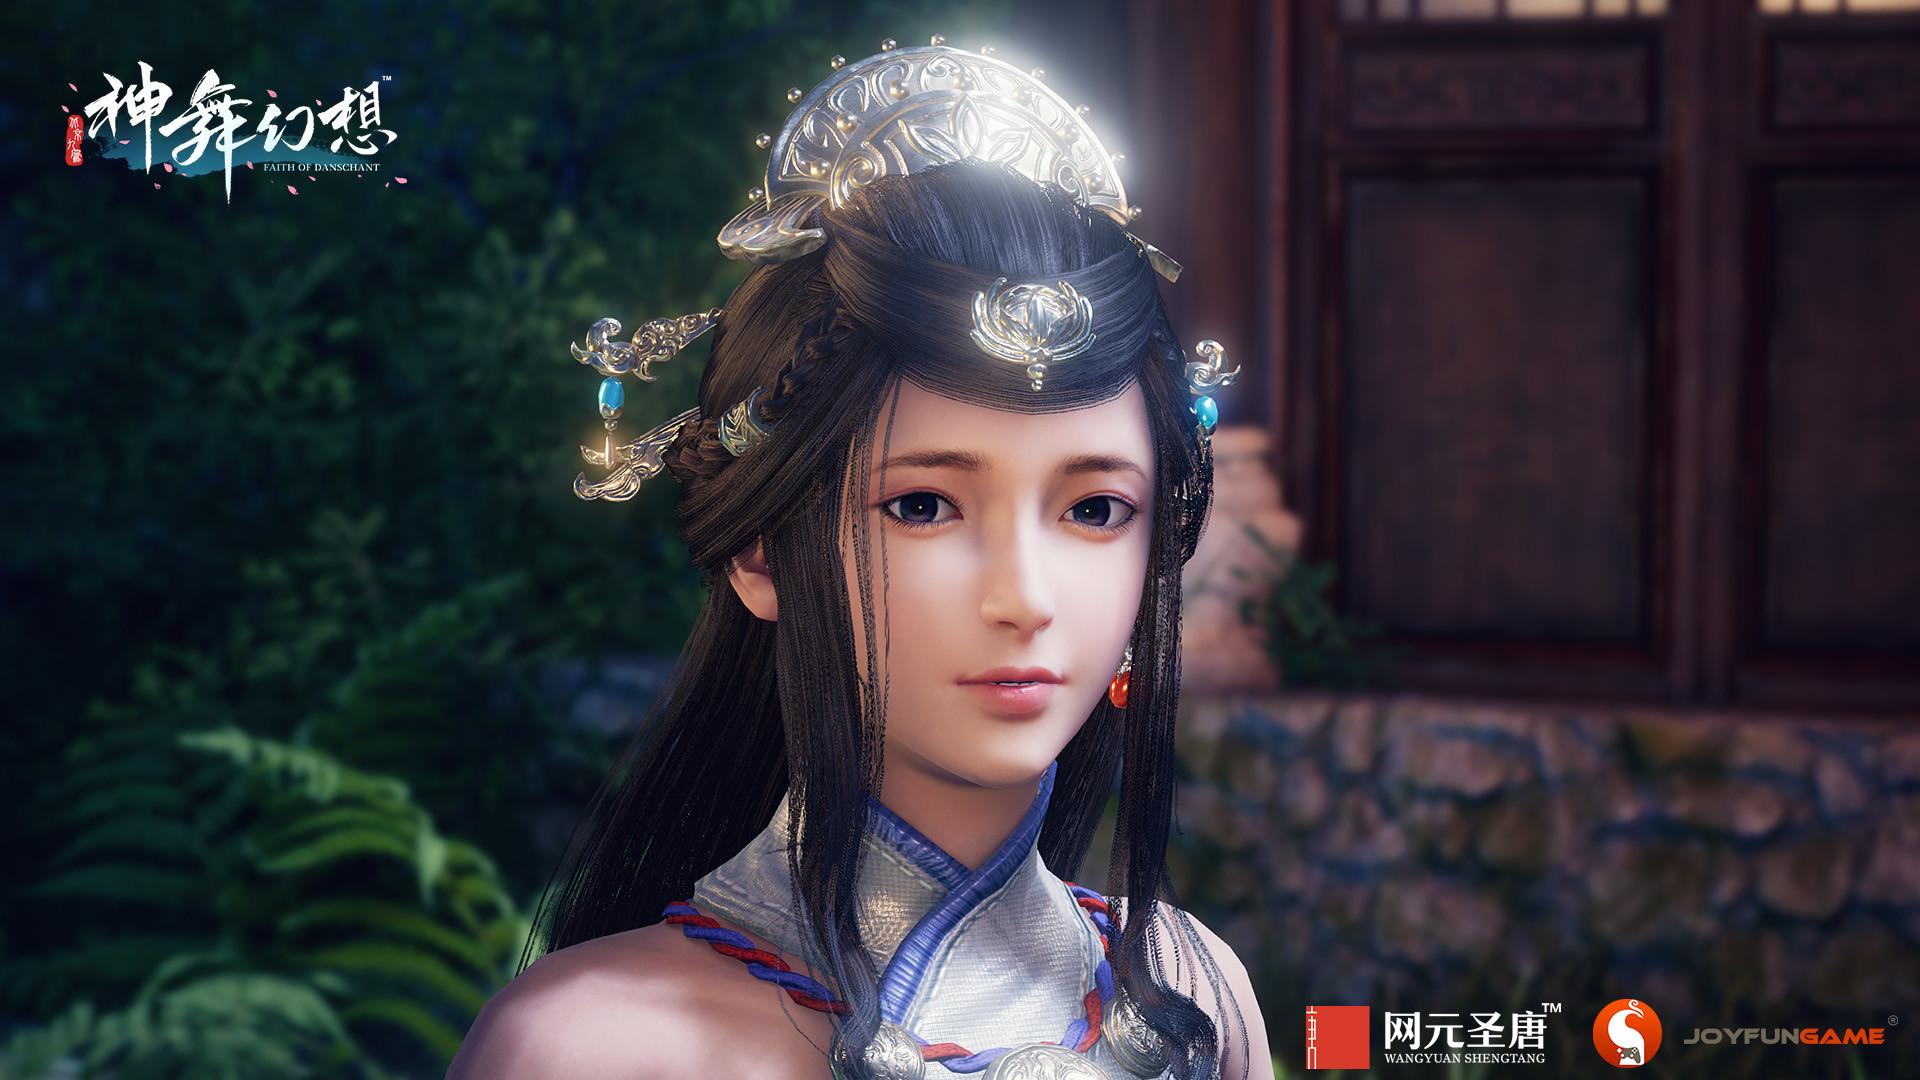 Screenshot №3 from game 神舞幻想 Faith of Danschant